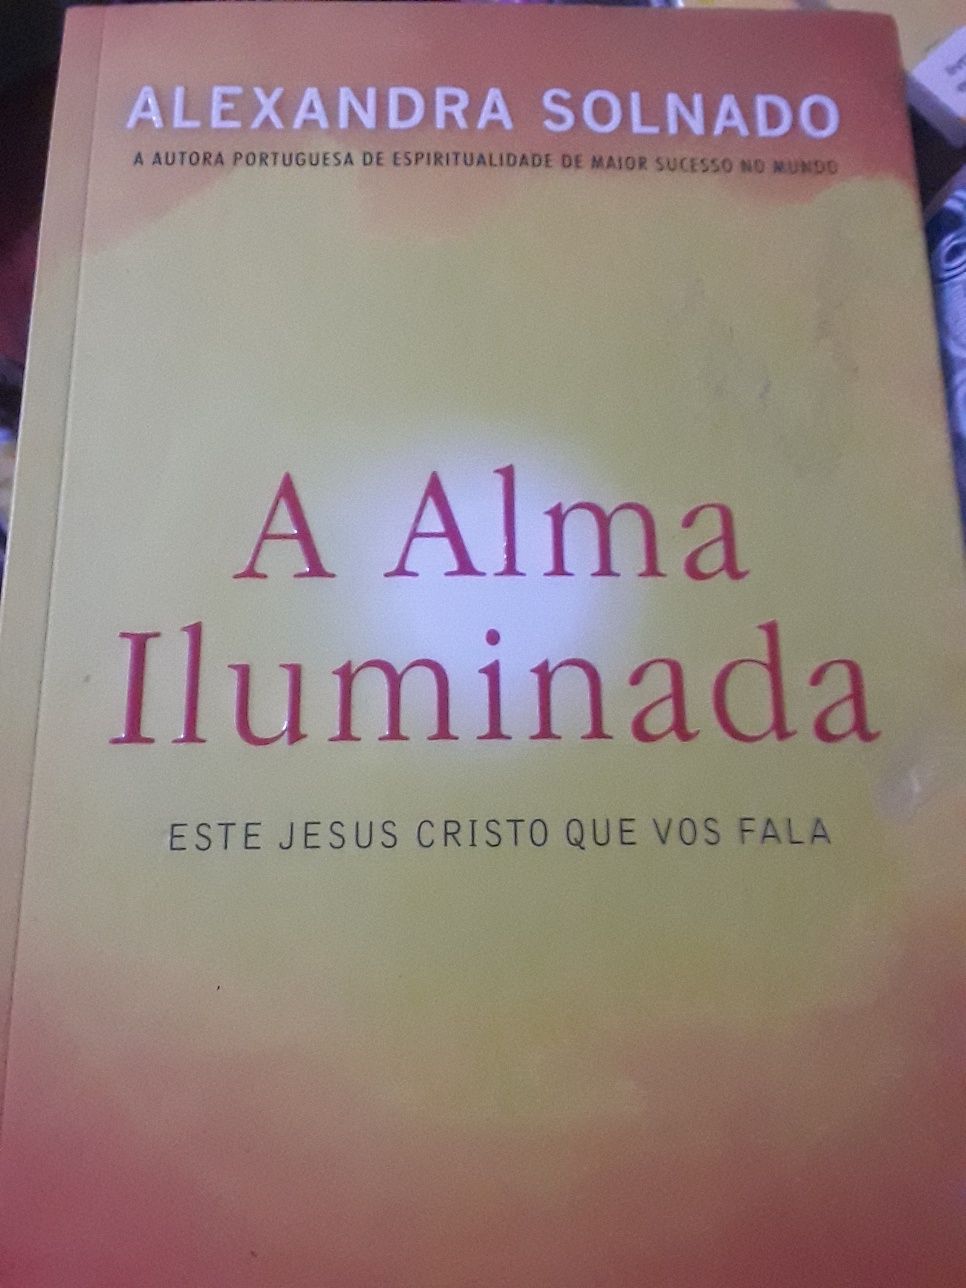 Alexandra Solnado/Alma iluminada,este Jesus Cristo,a era da liberdade